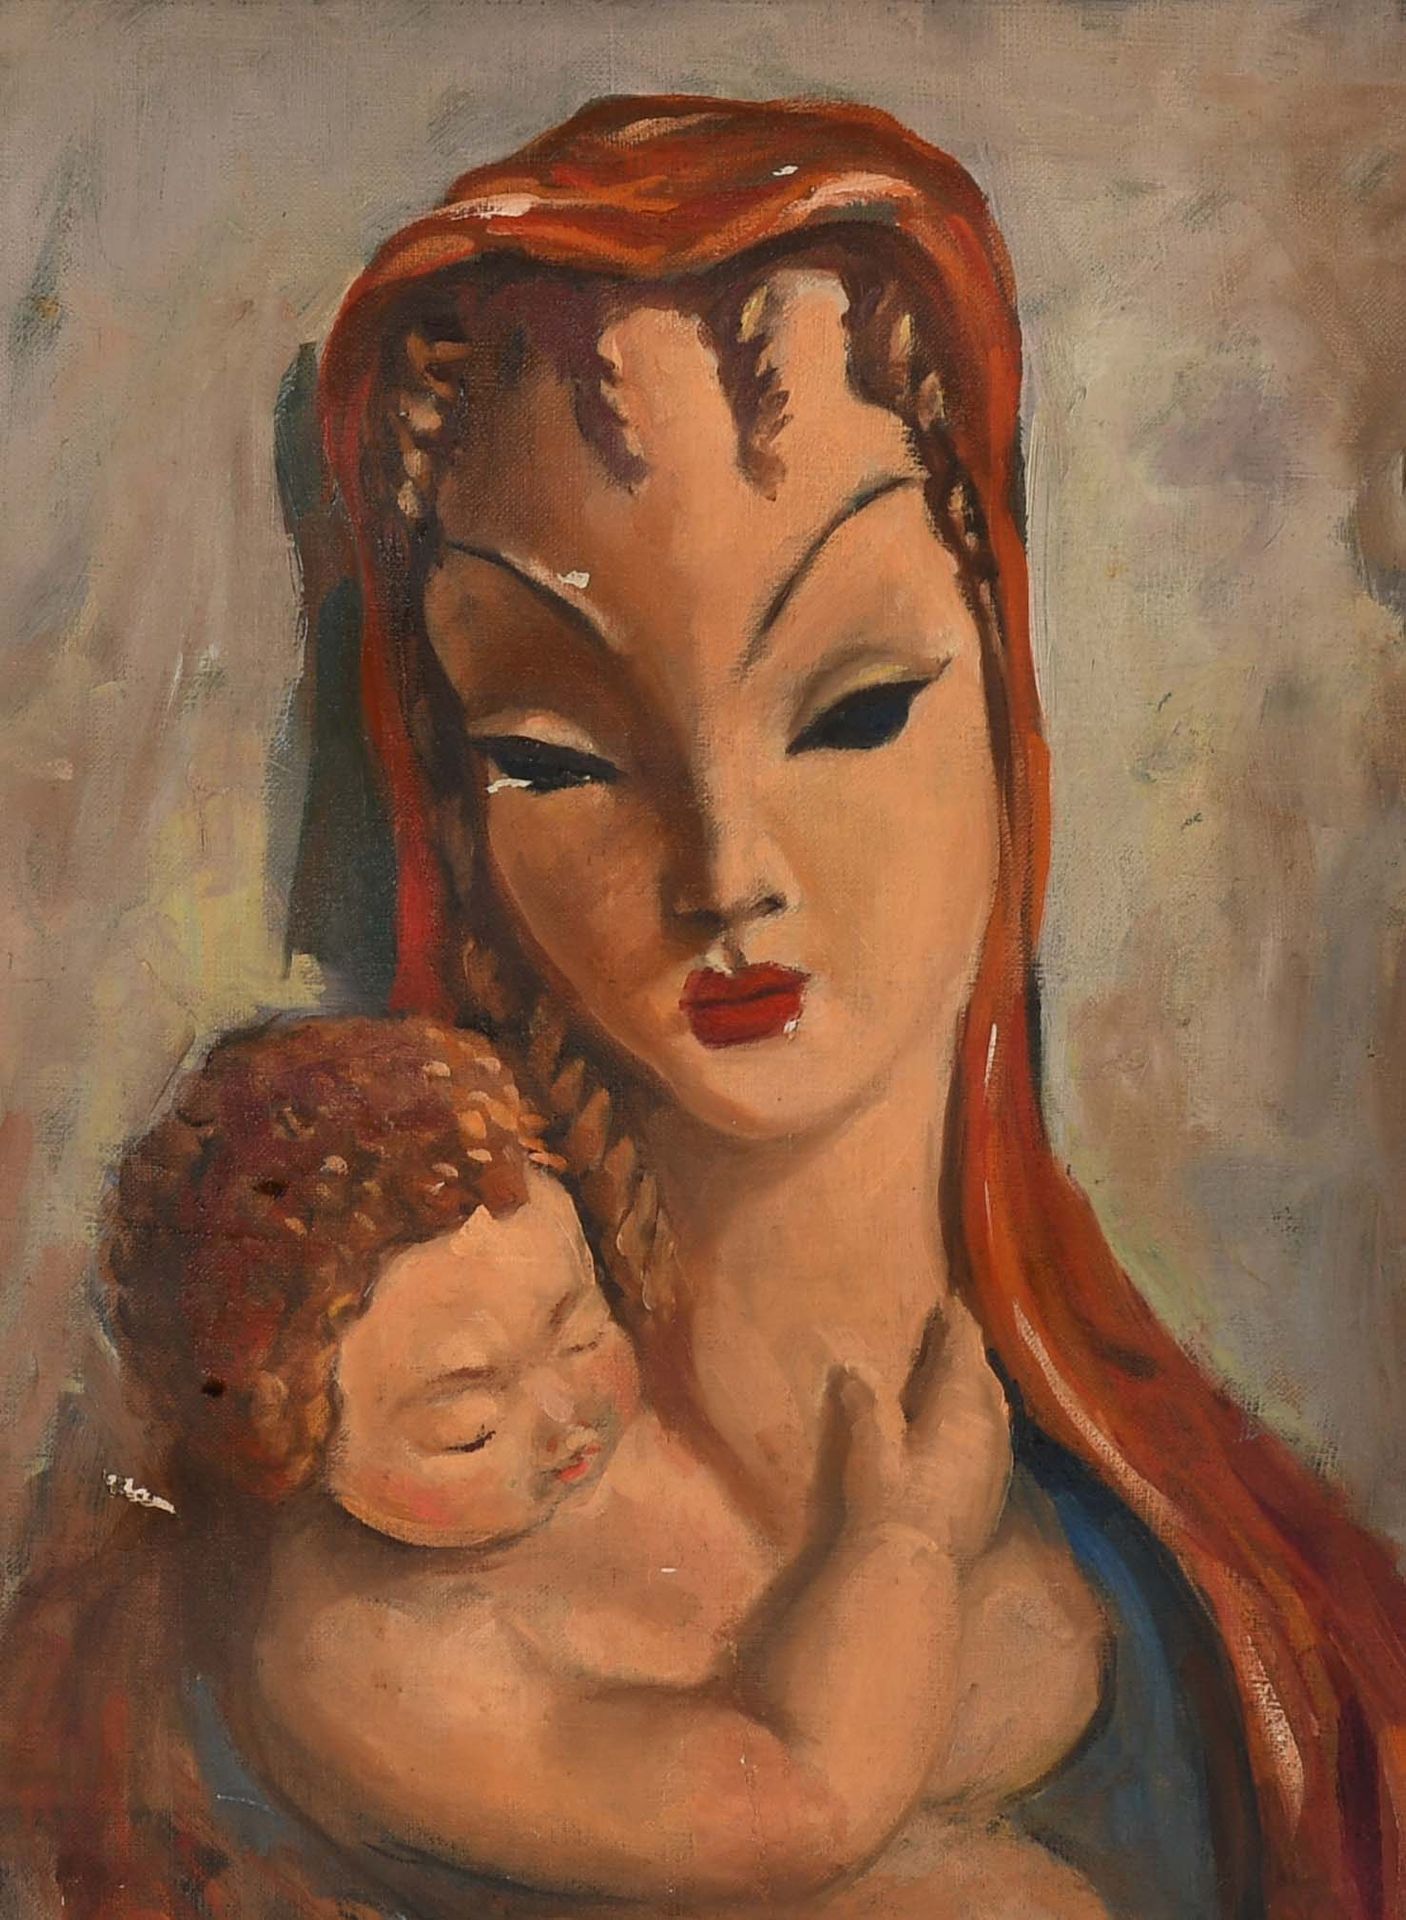 Null Pittura

Olio su tela: "Maternità".

Dimensioni: 42 cm x 32 cm.